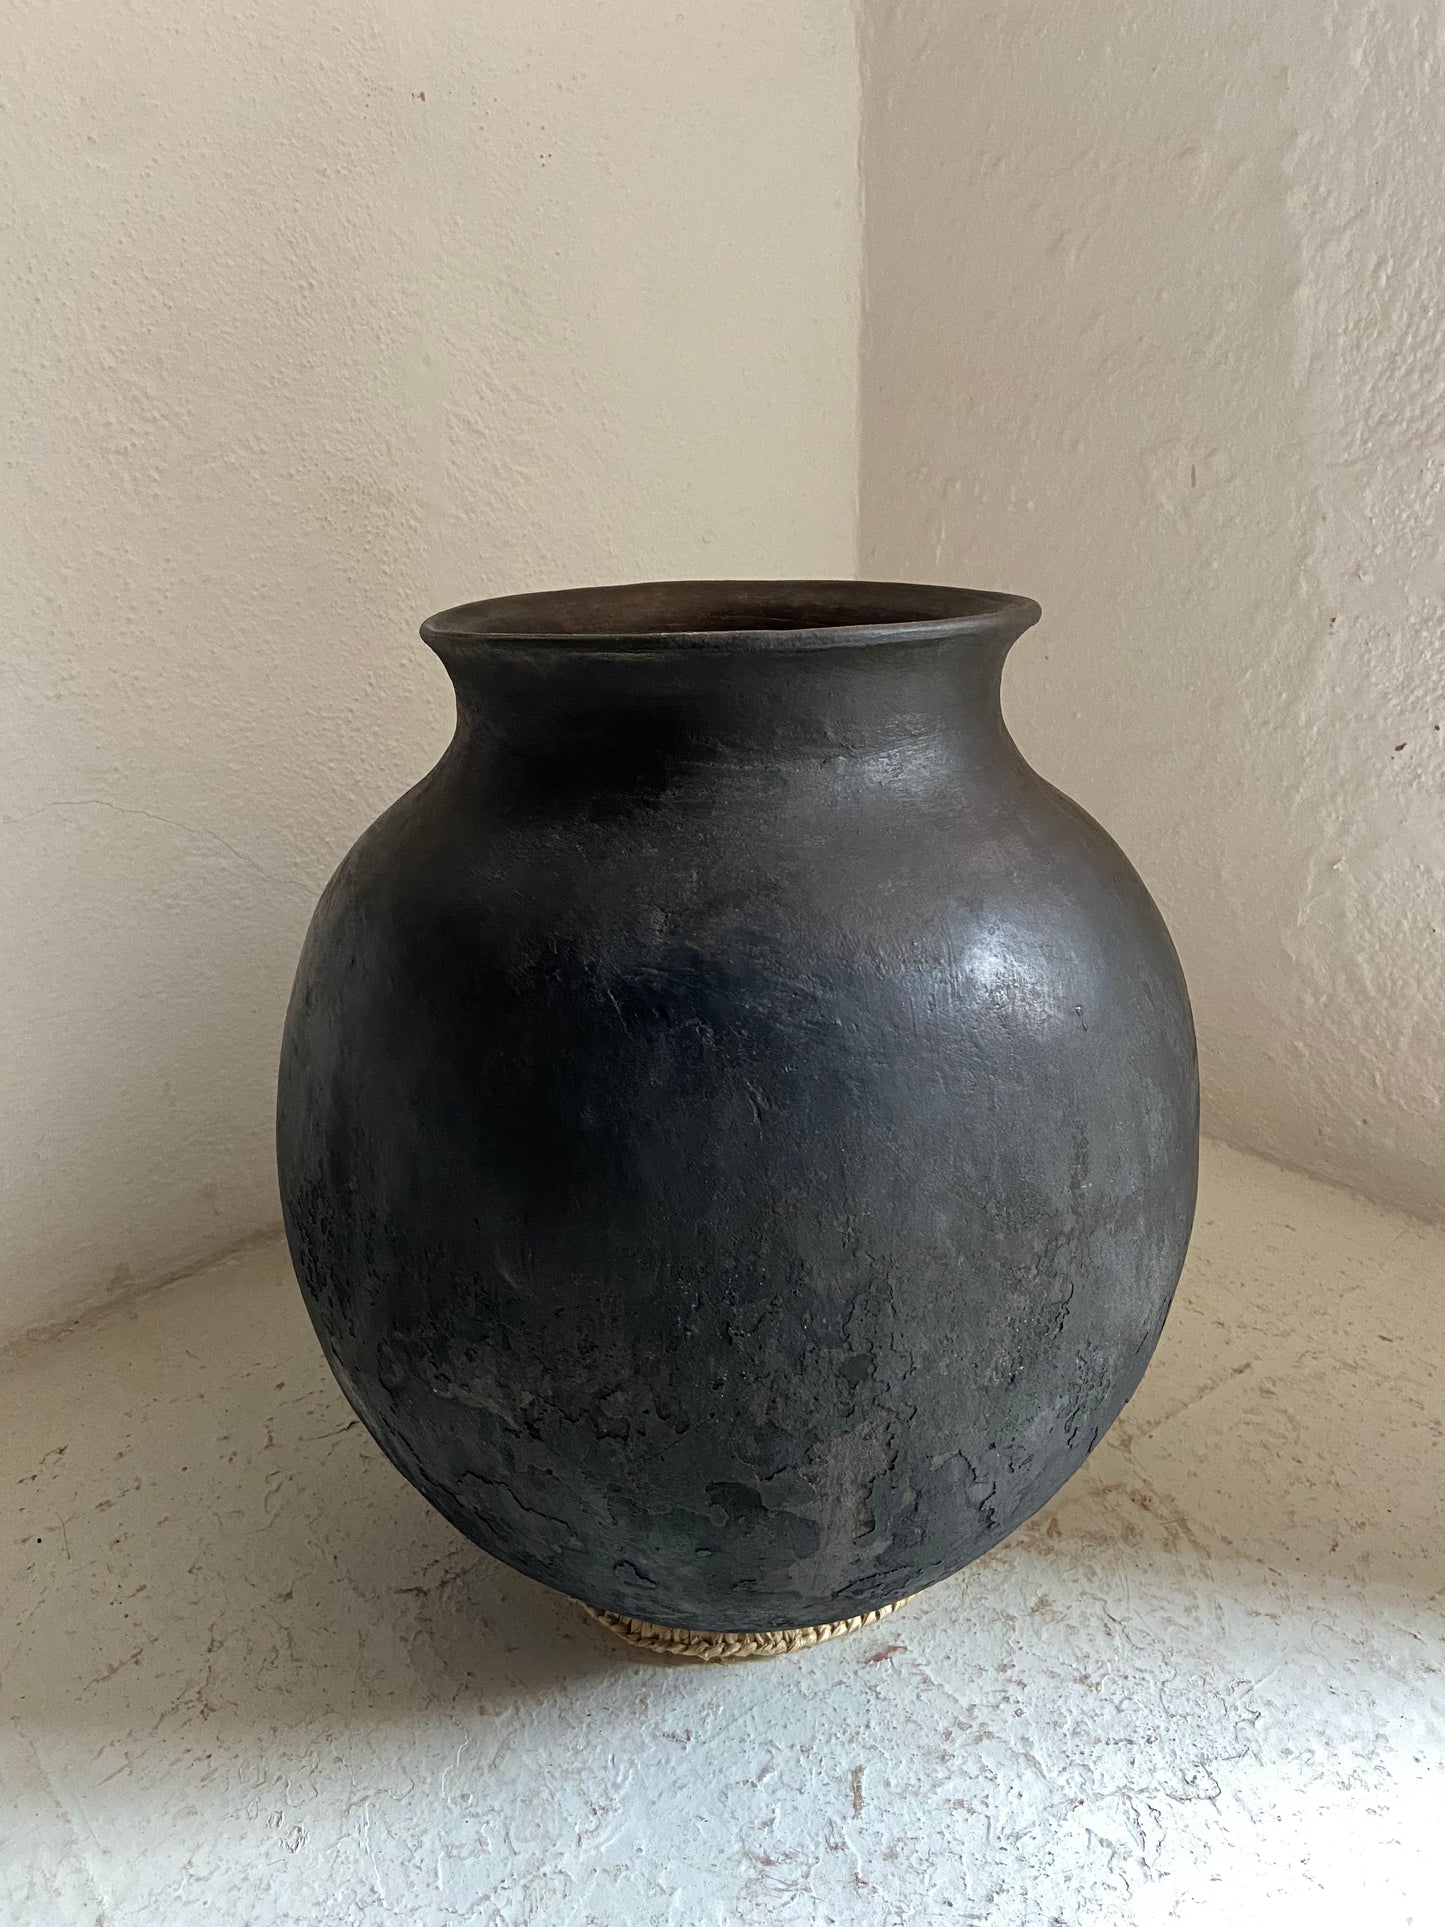 Michoacan Pot / Olla Michoacán